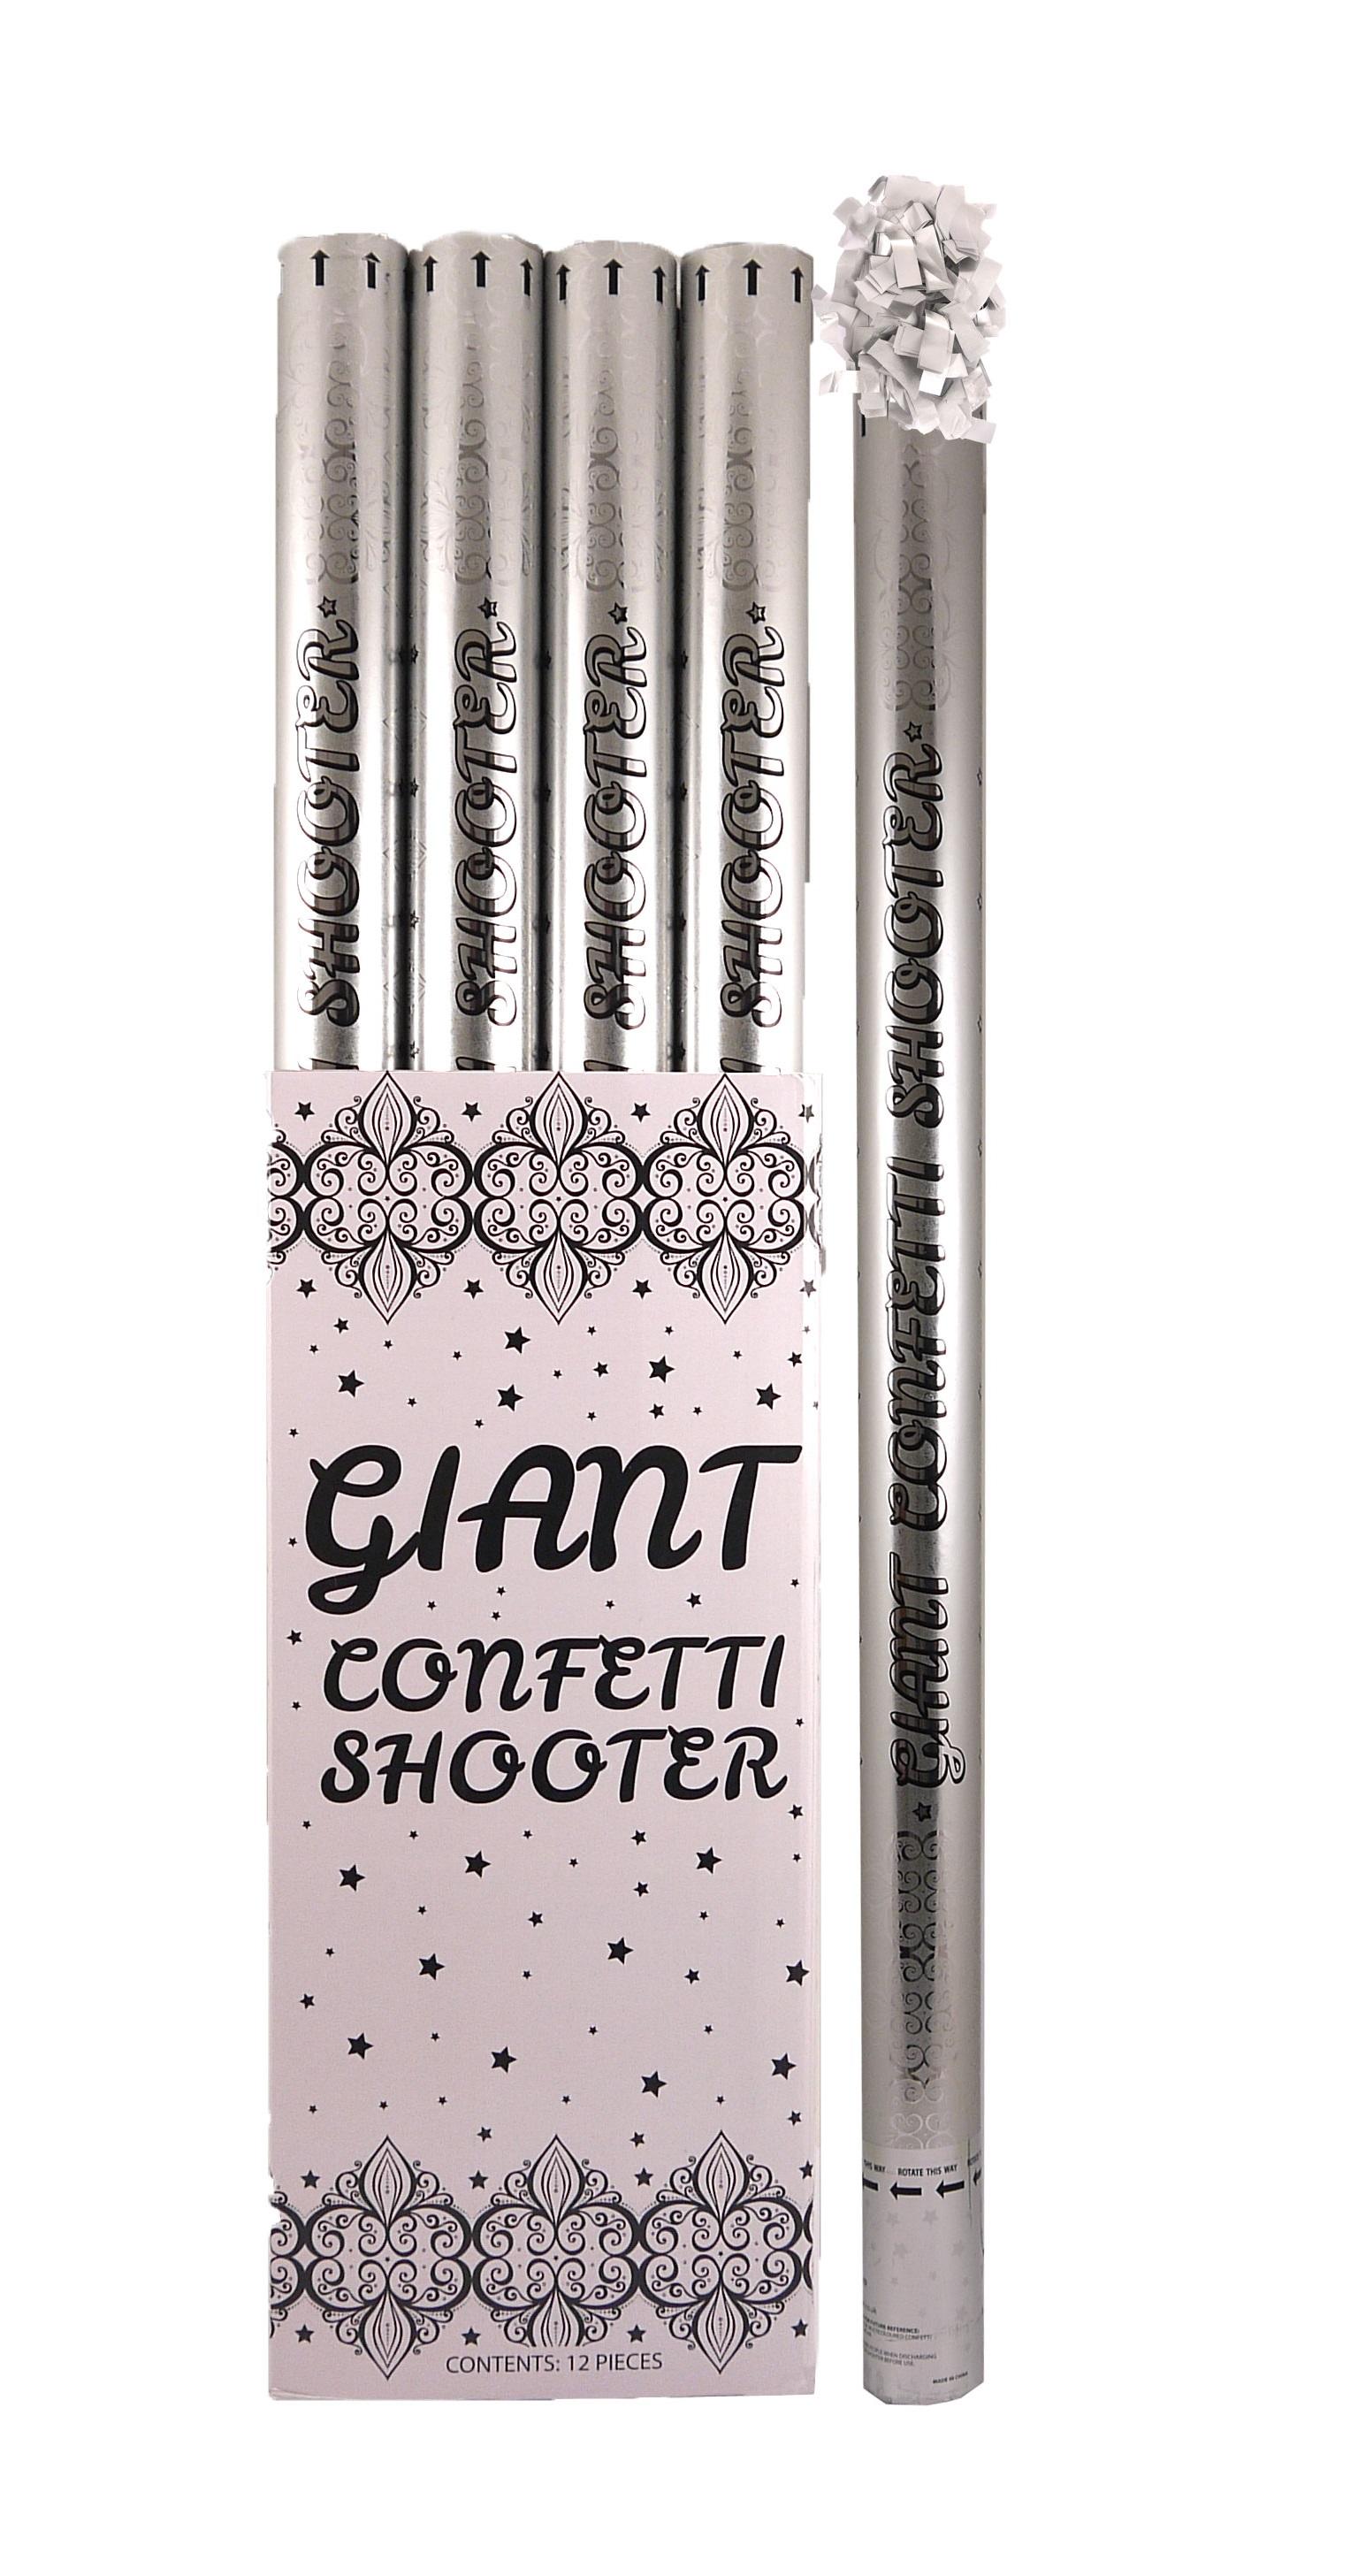 Confetti Cannon Shooter Silver Paper